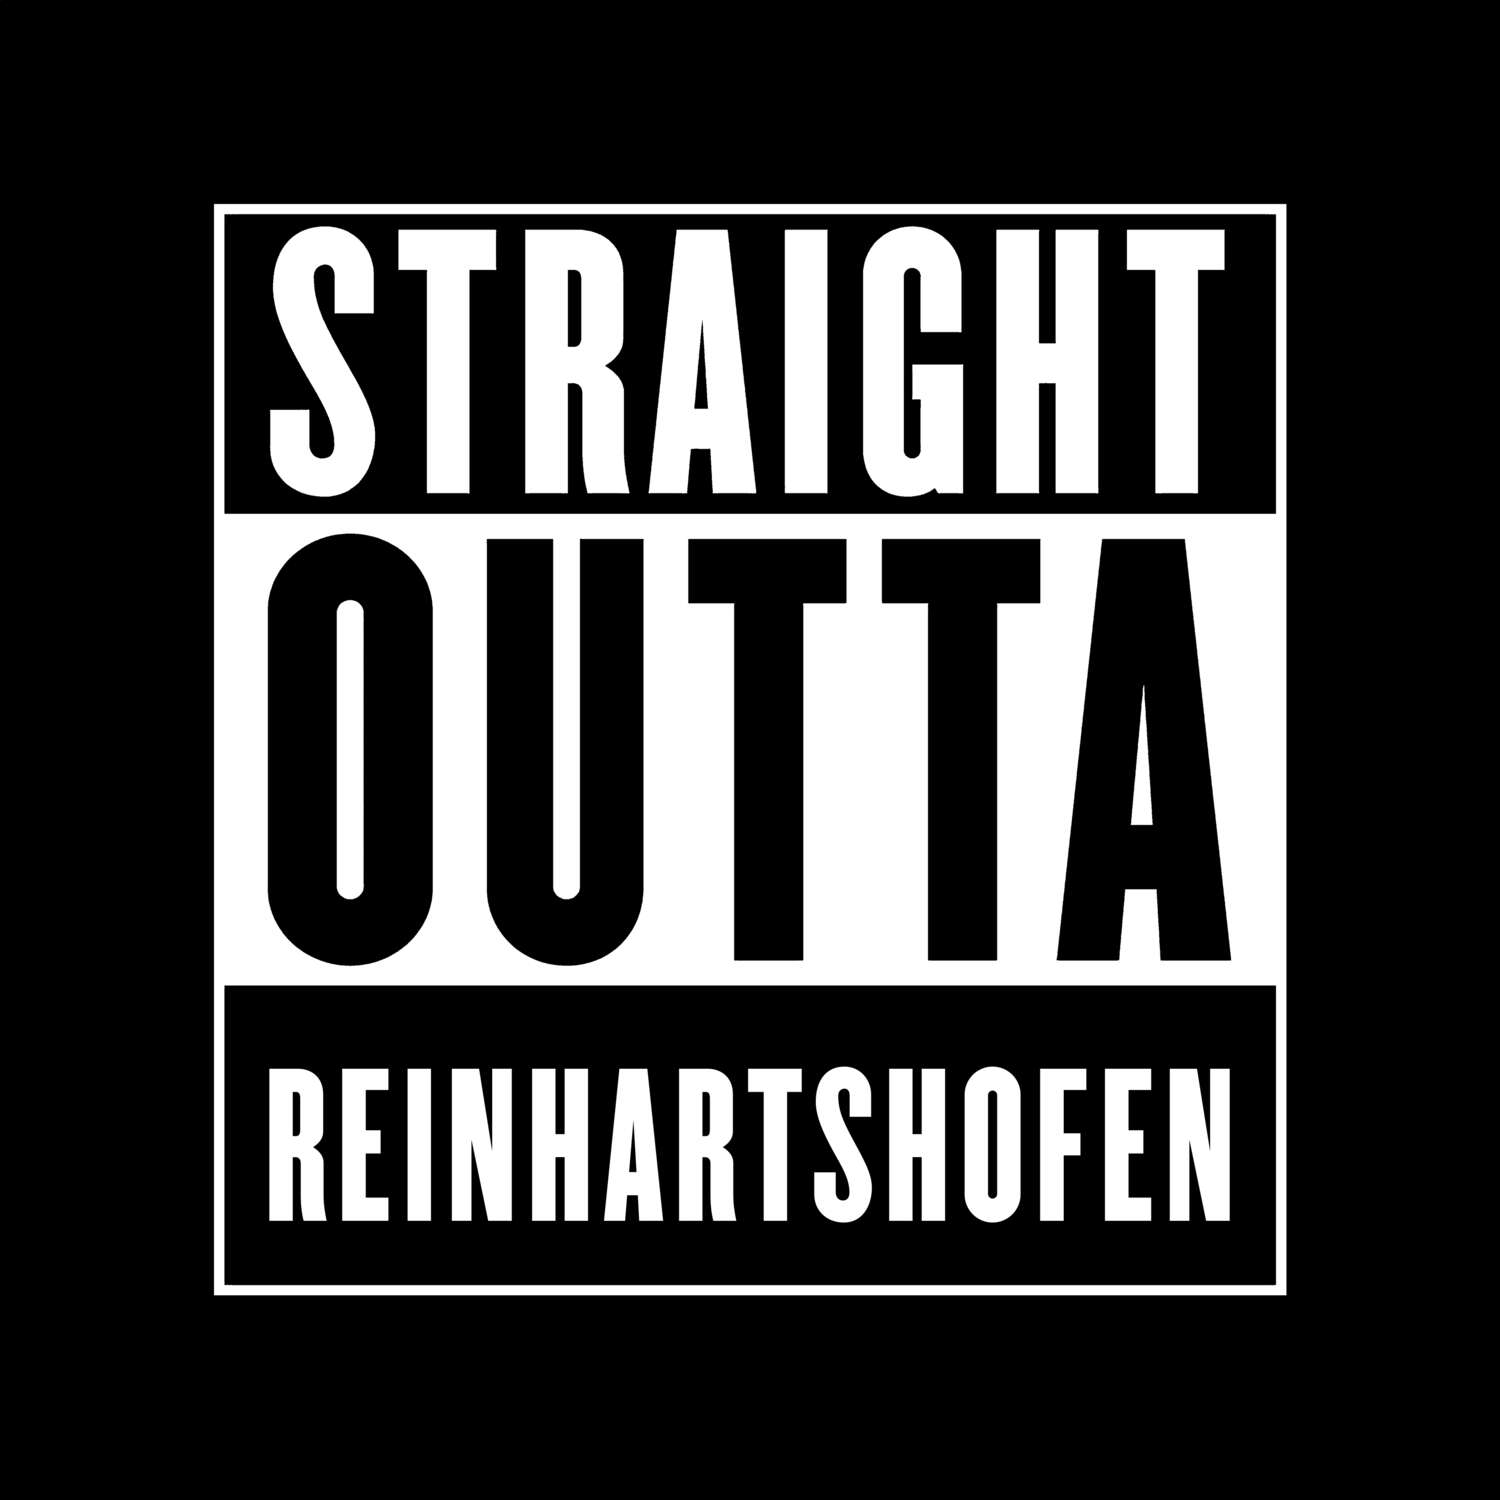 Reinhartshofen T-Shirt »Straight Outta«